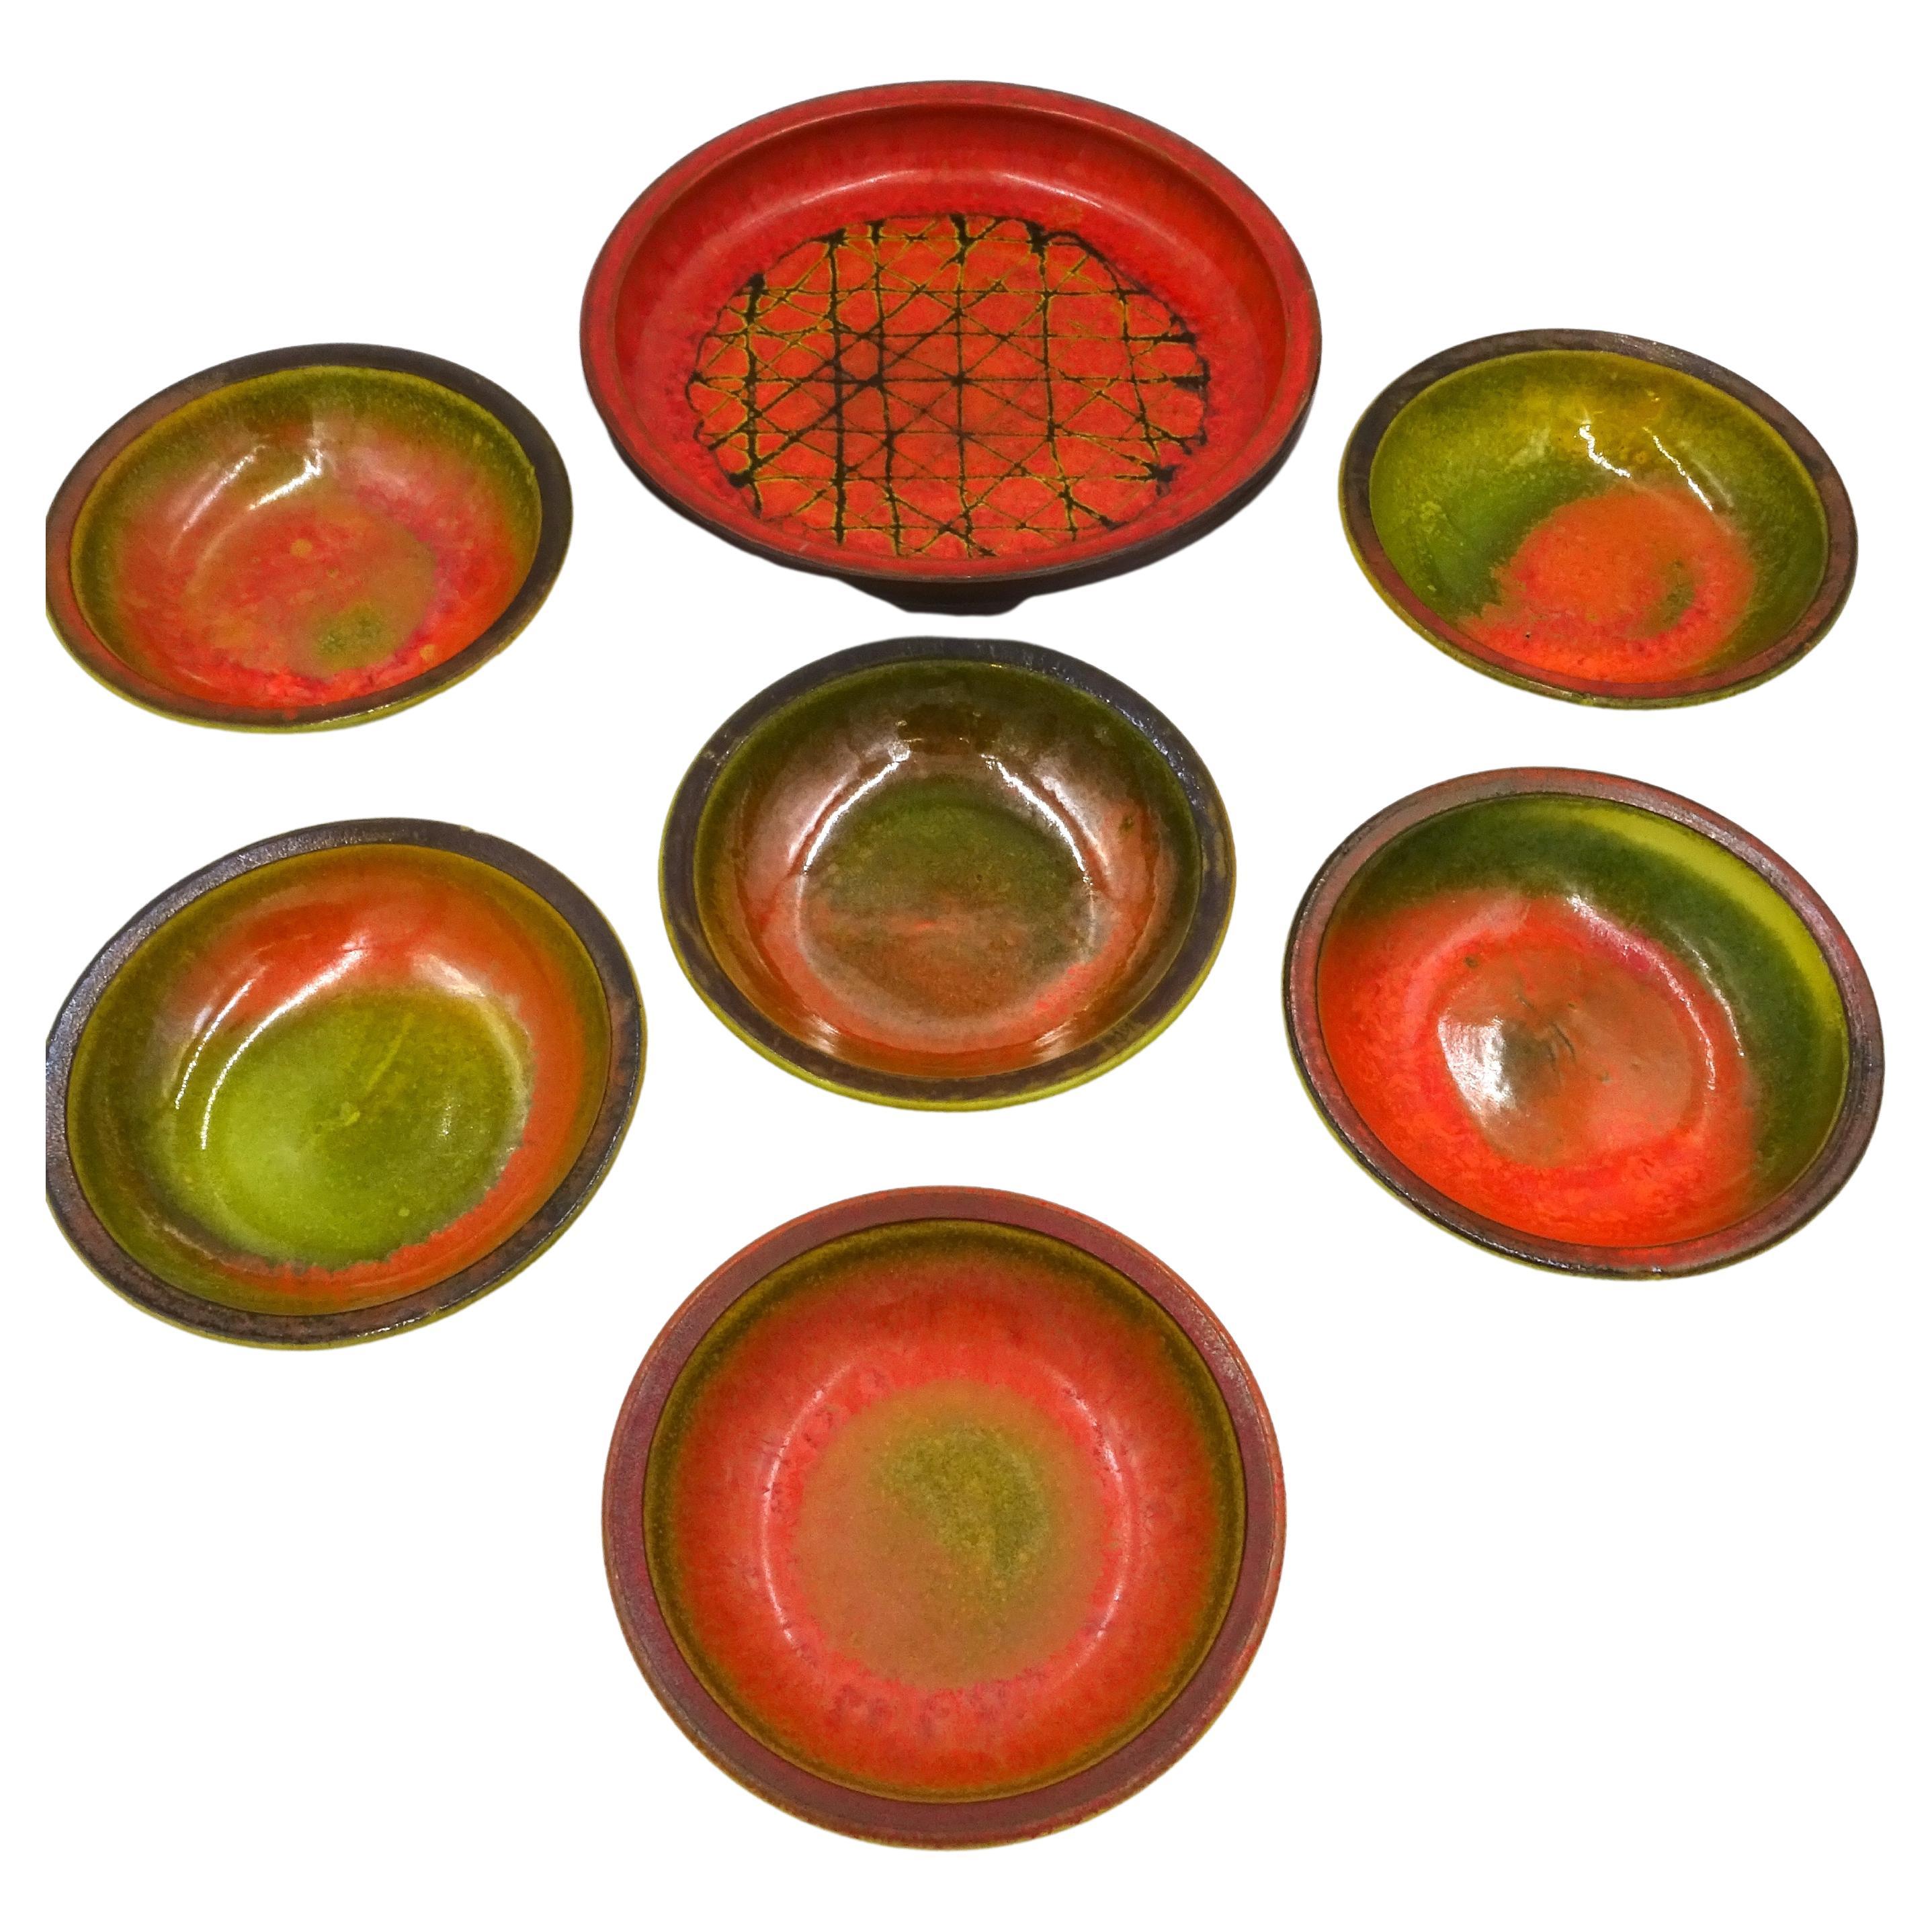 Glazed Ceramic Bowls by Alessio Tasca, 1970s, Set of 7